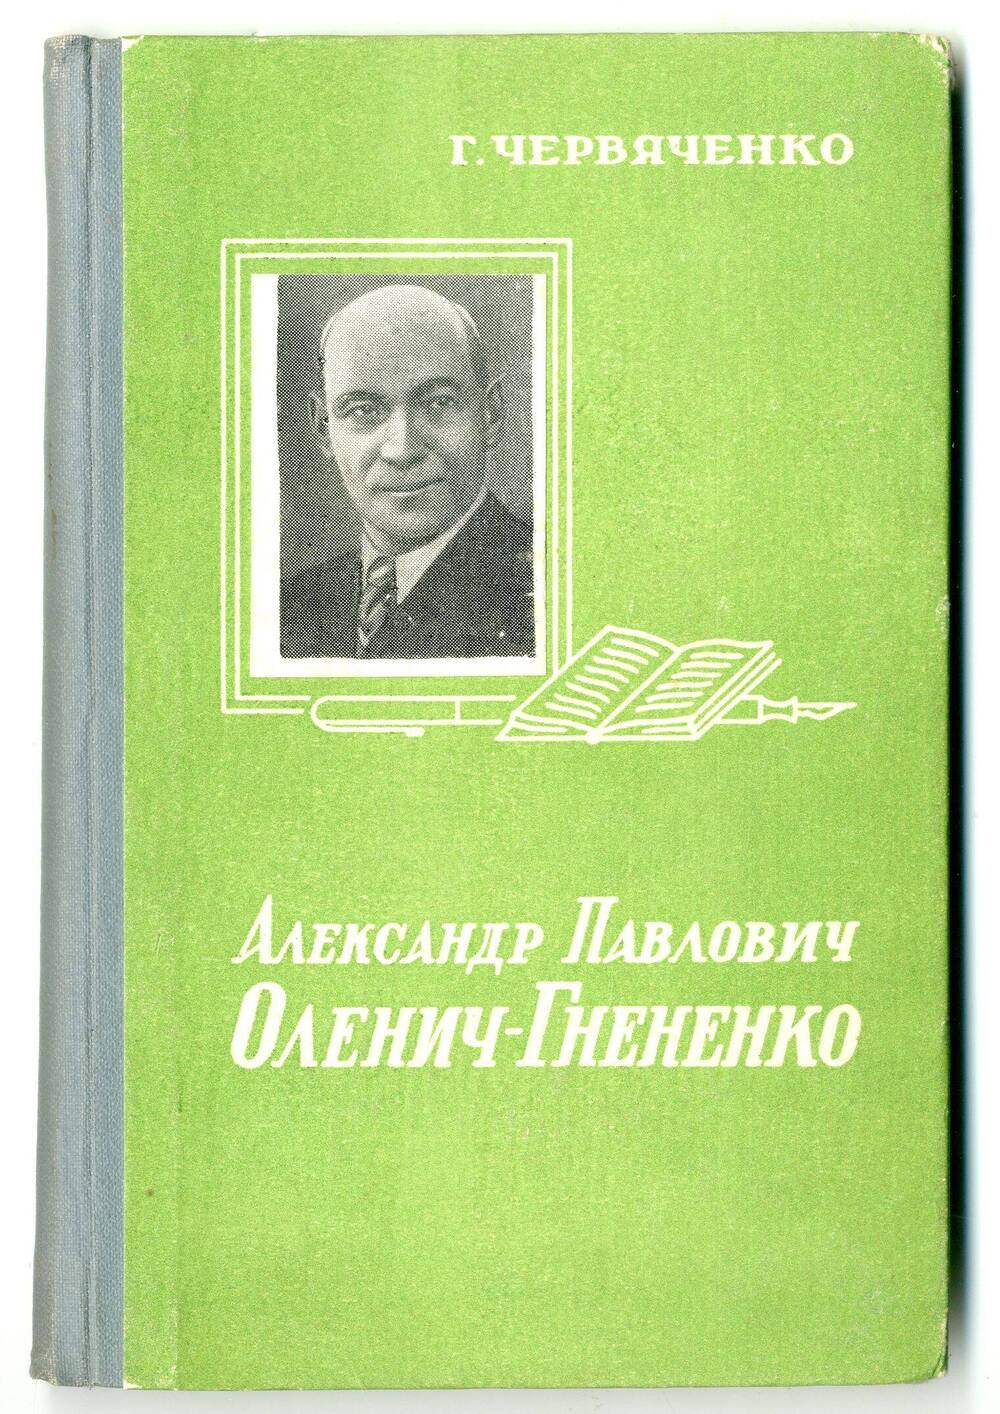 Книга: Червяченко Г. Александр Павлович Оленич-Гнененко, Ростов н/Д, 1961.